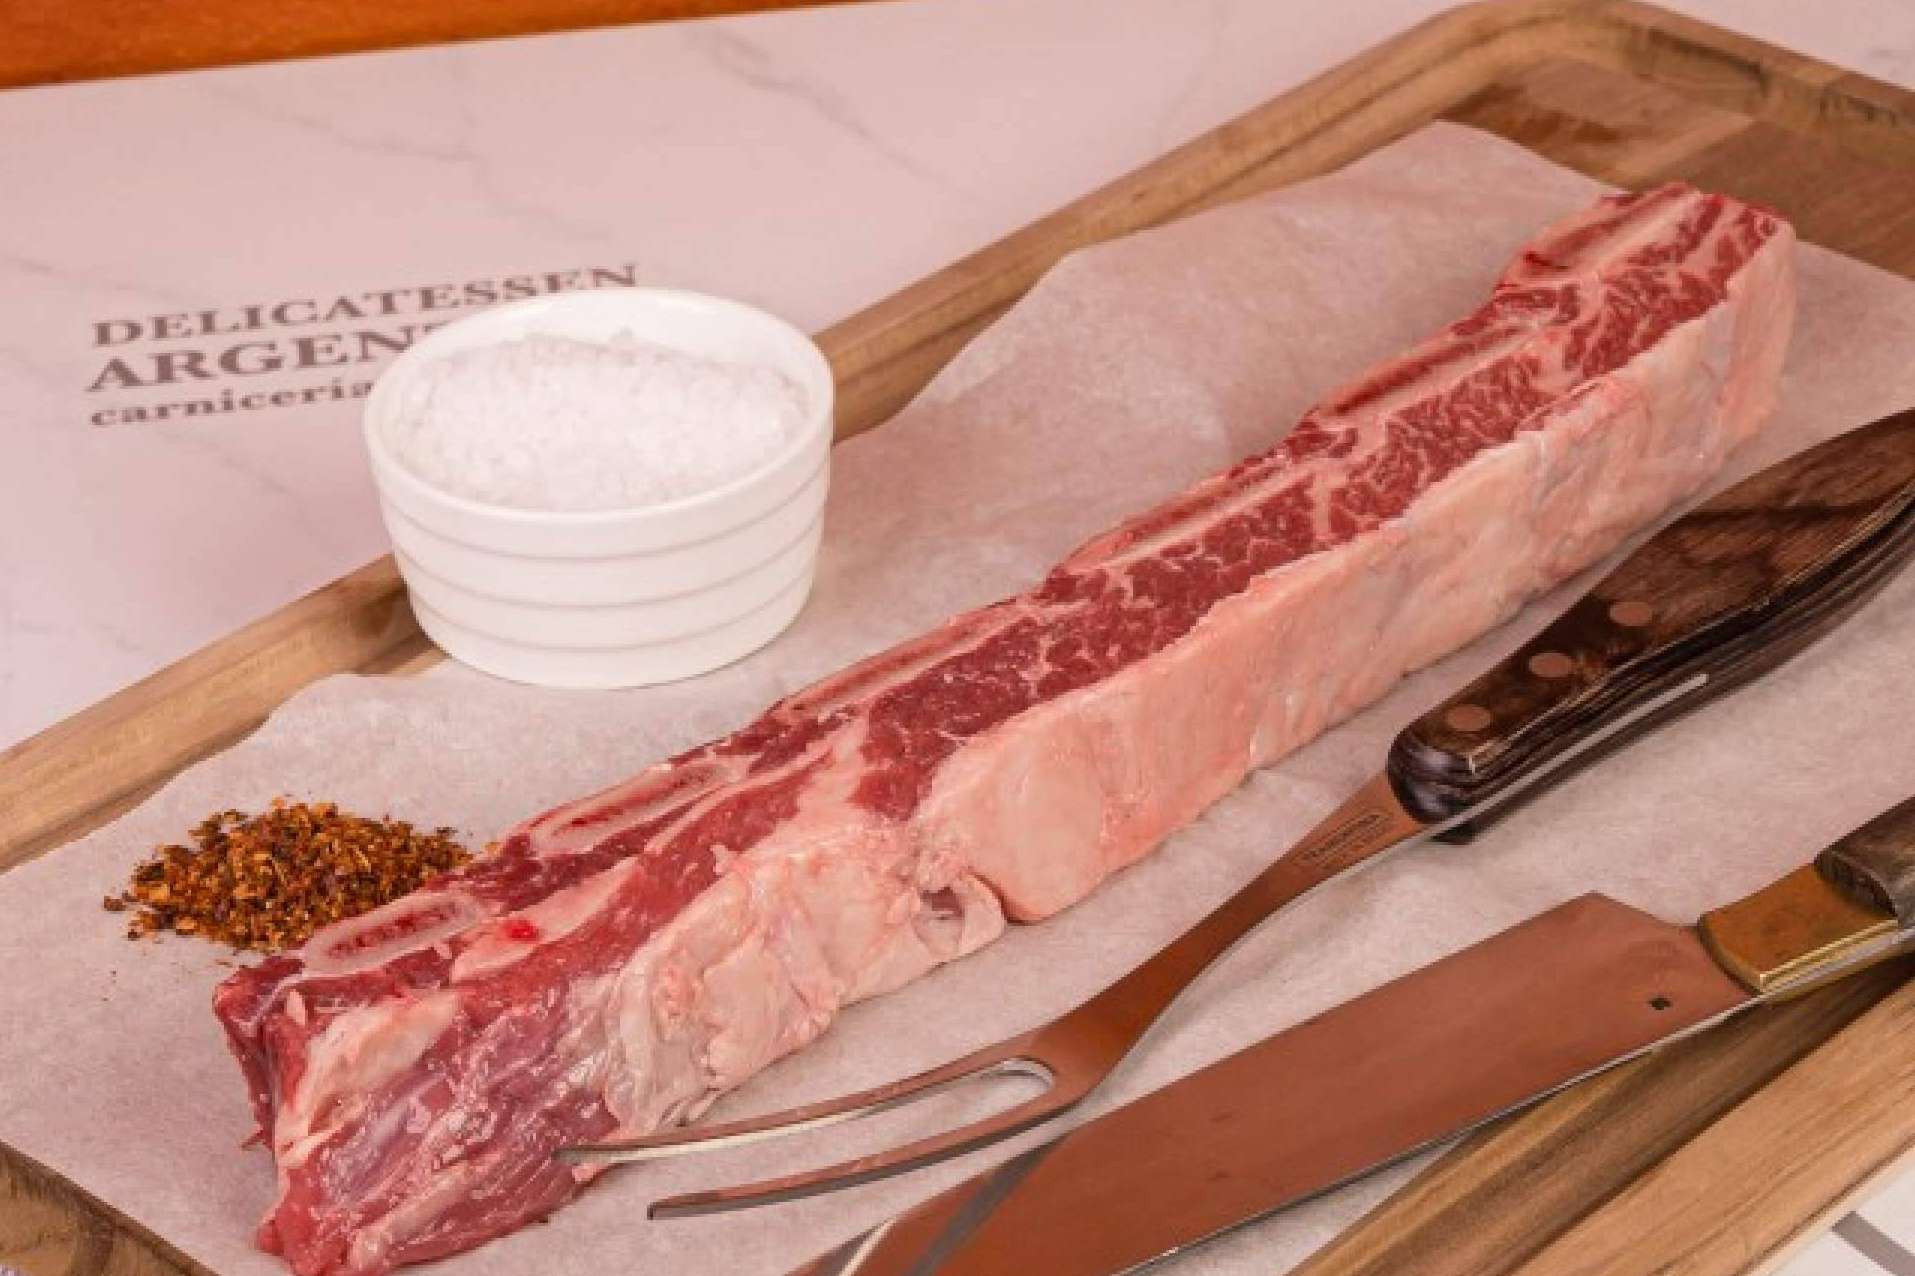  Tira de asado Angus, la carne más típica del asado argentino 